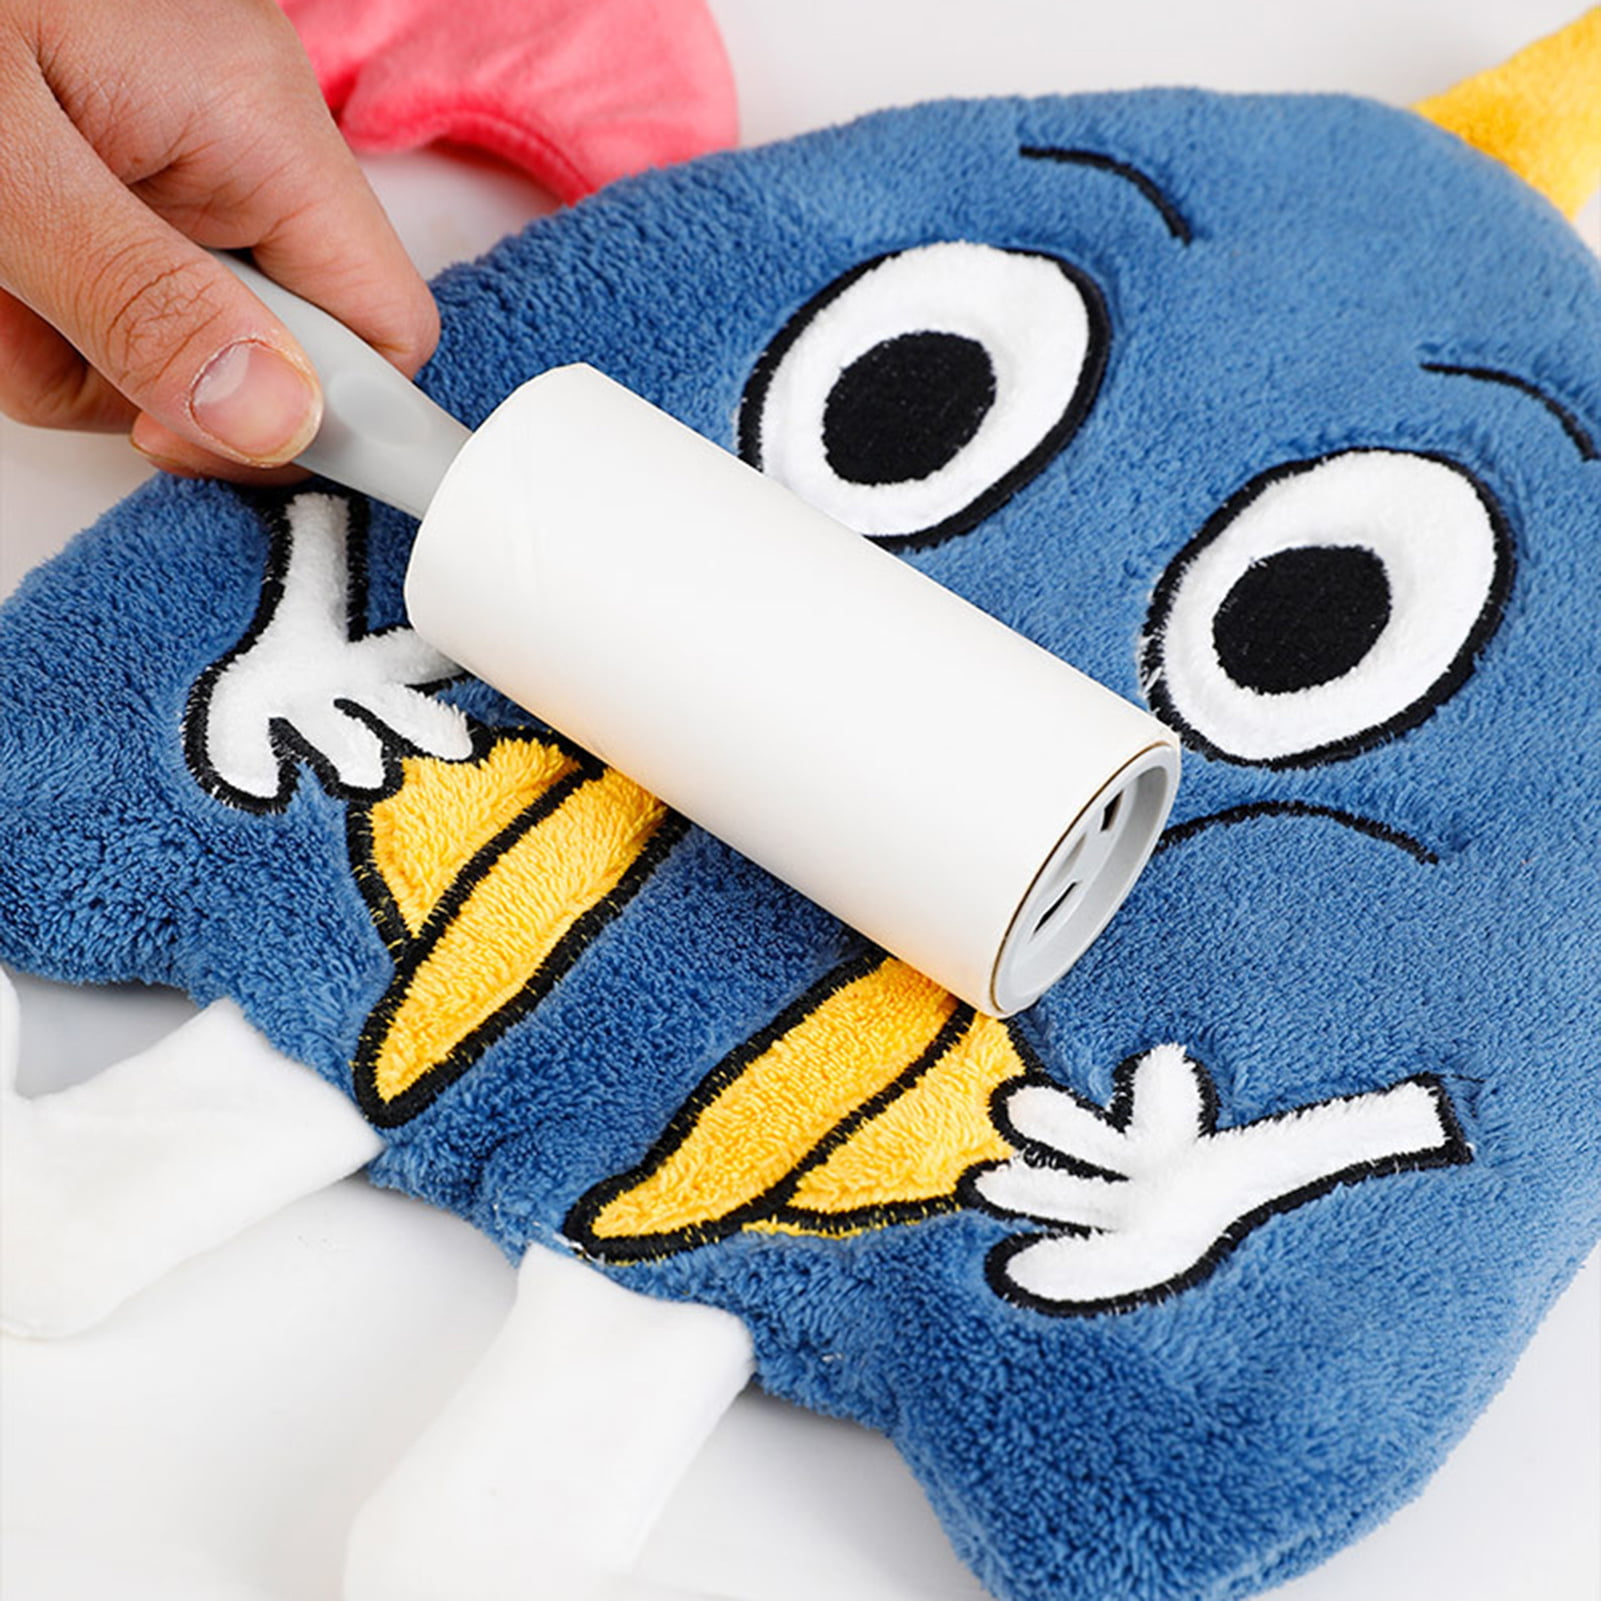 Rocl Asciugamano clifcragrocl,Cartoon Gufo Super Assorbimento Coral Fleece Towel Washcloth Accessori per Il Bagno Blu 